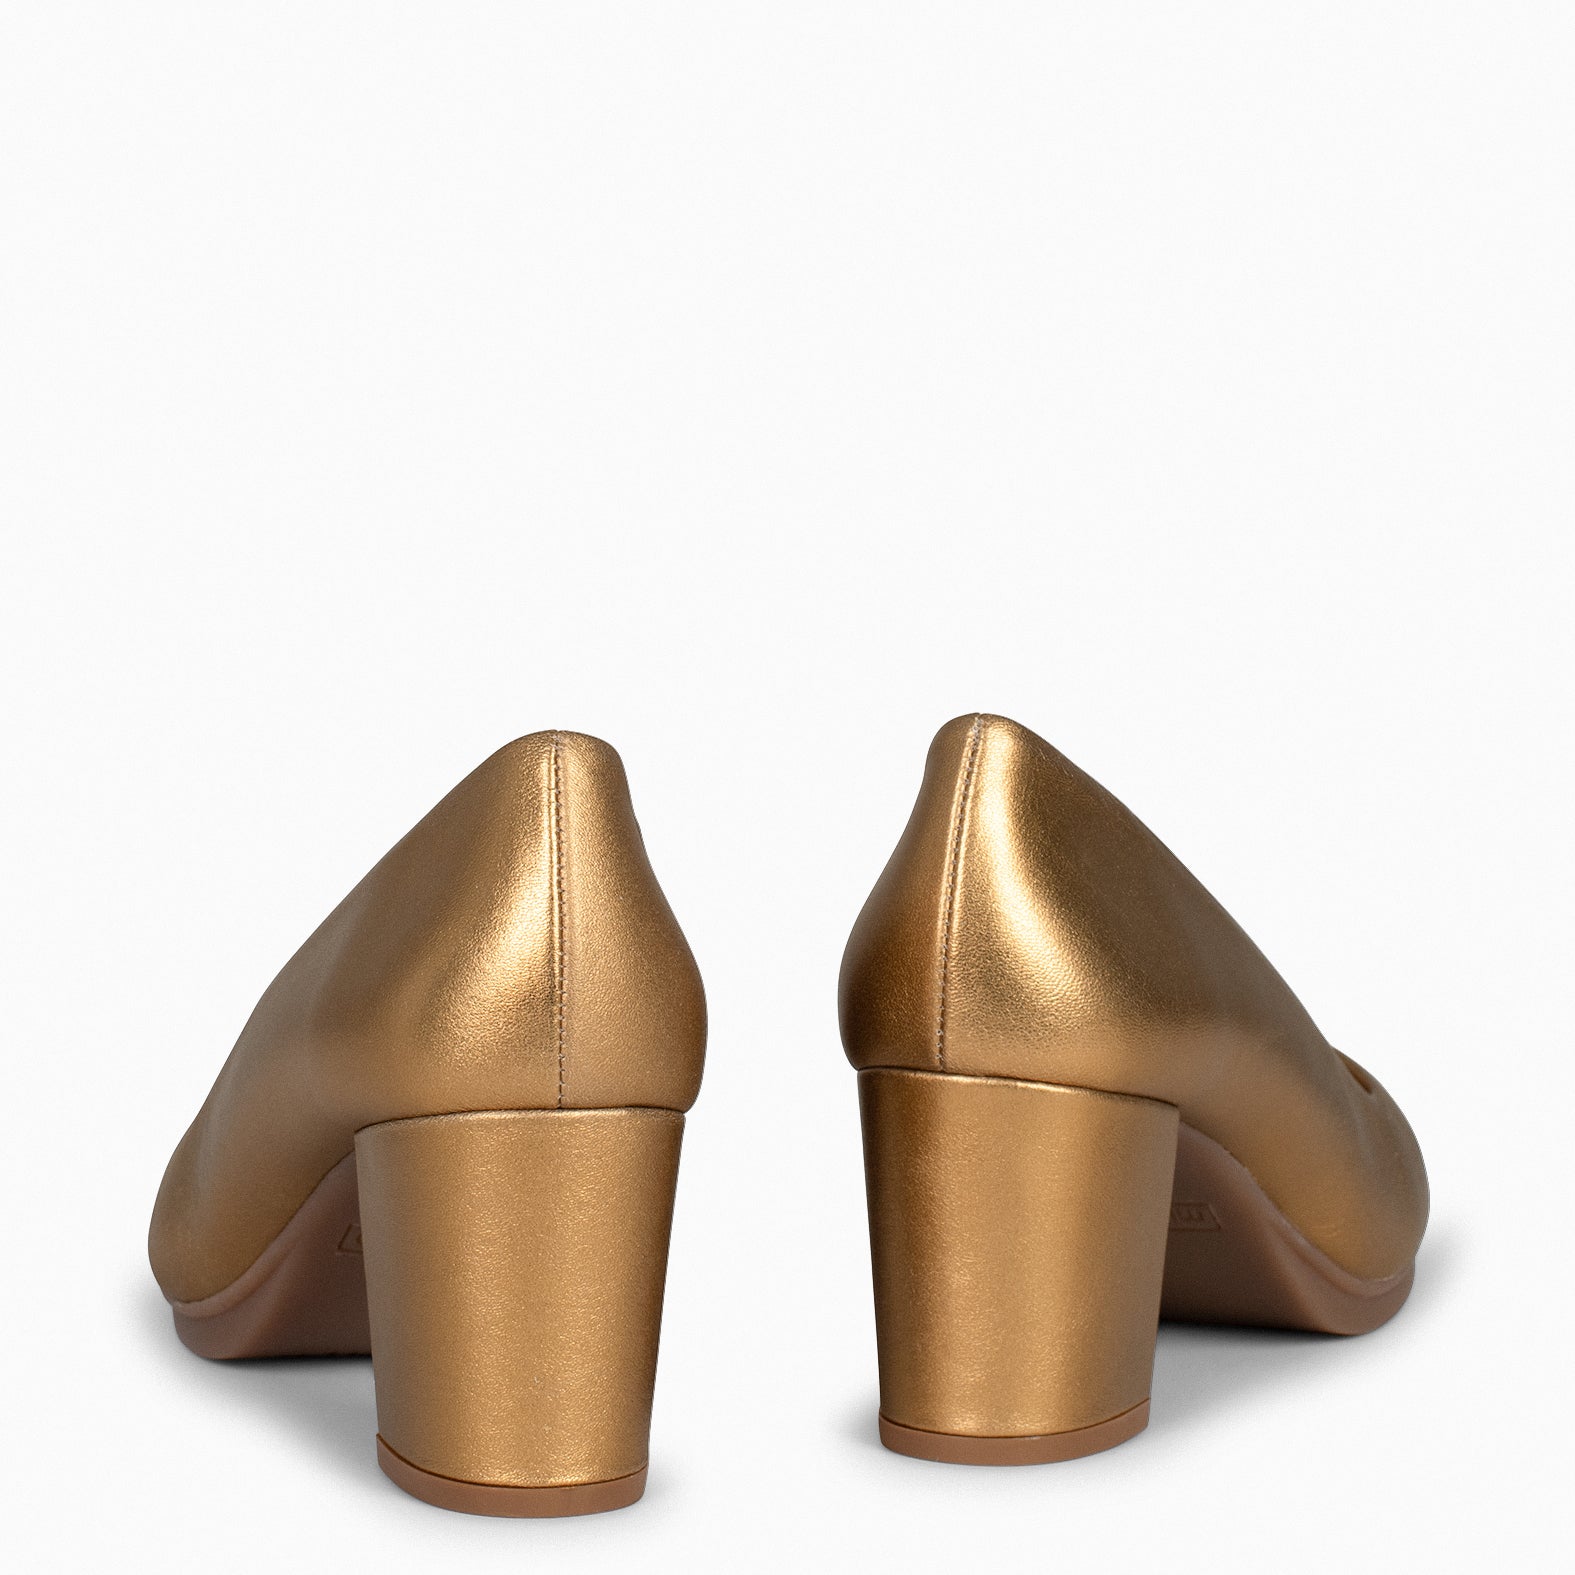 URBAN S SPLASH – BRONZE metallic leather mid heels